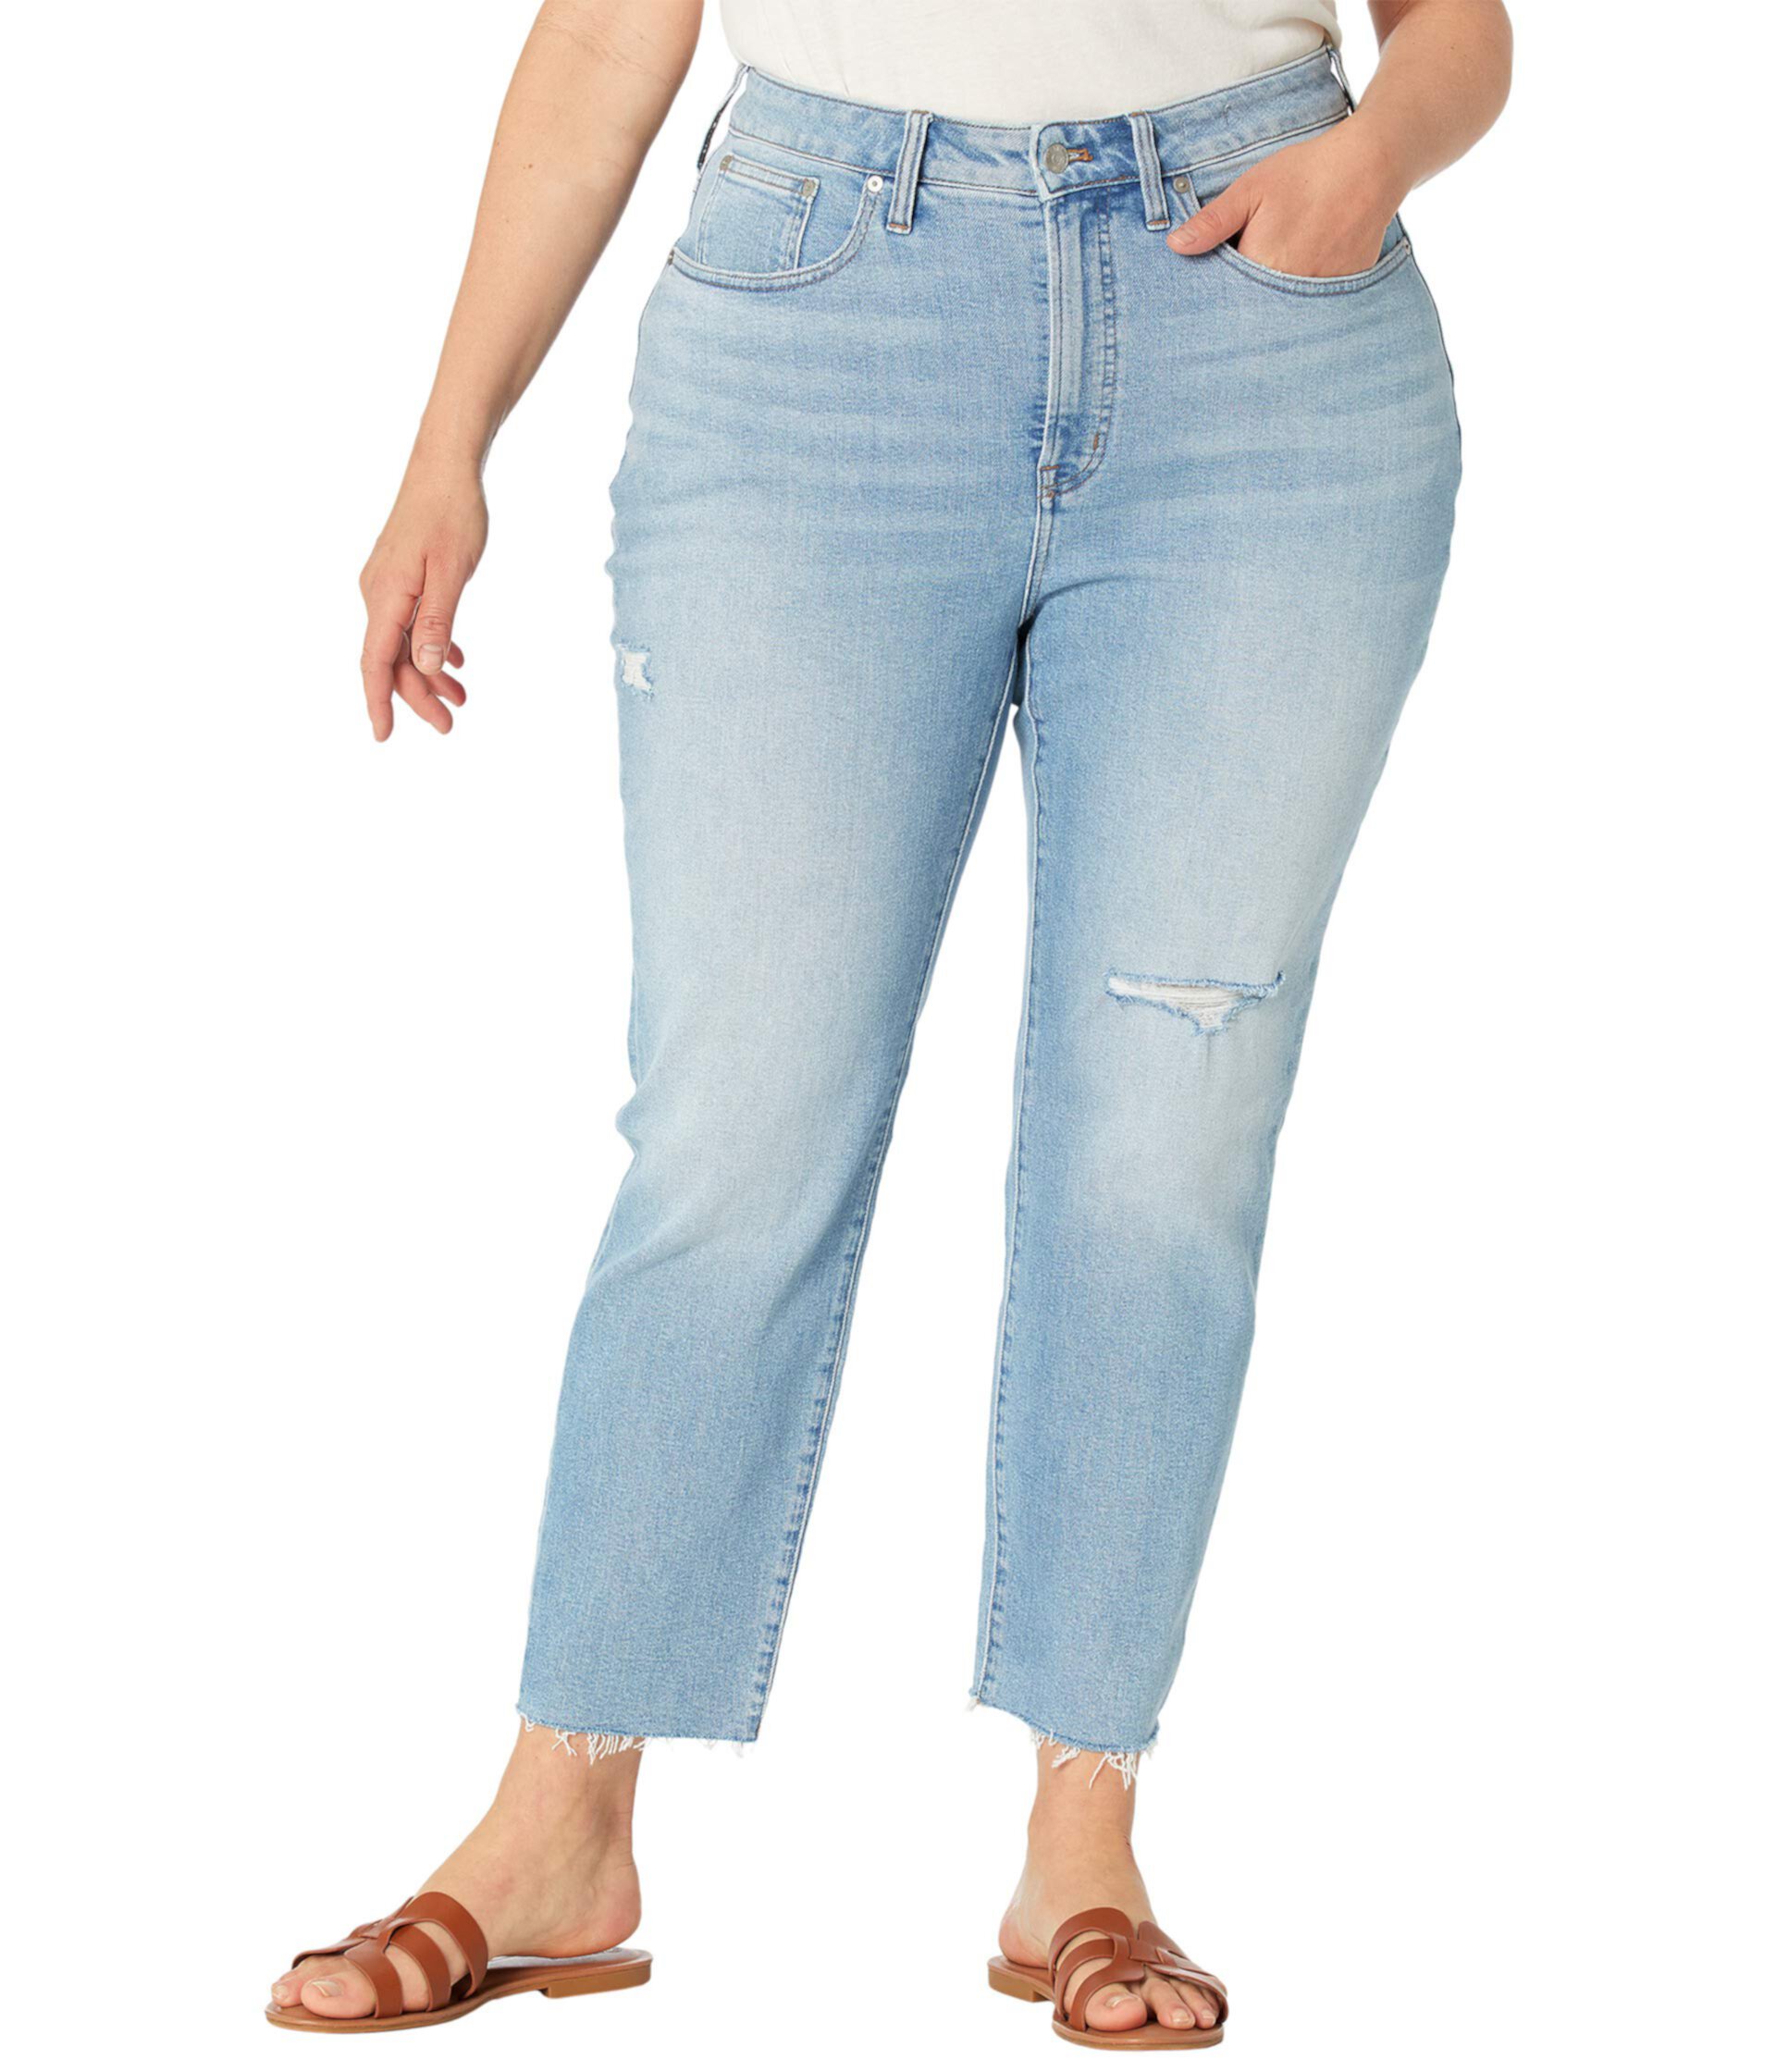 Винтажные джинсы большого размера Curvy Perfect в цвете Coffey Wash Madewell